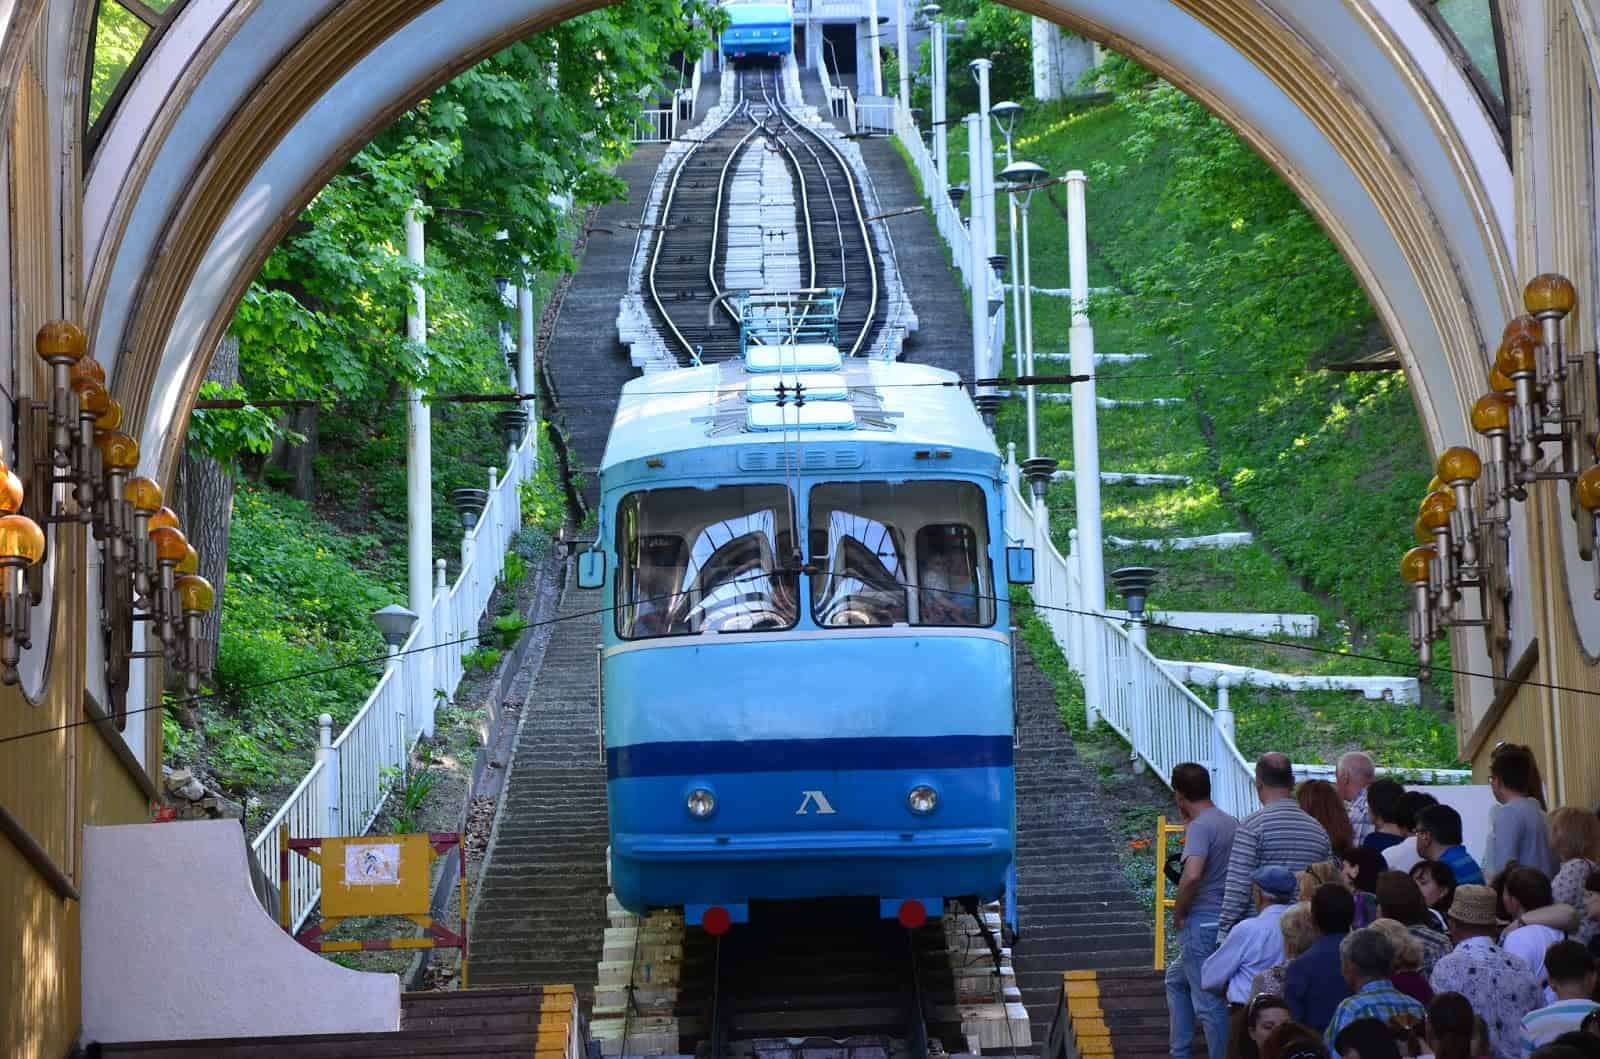 Kiev Funicular in Kyiv, Ukraine